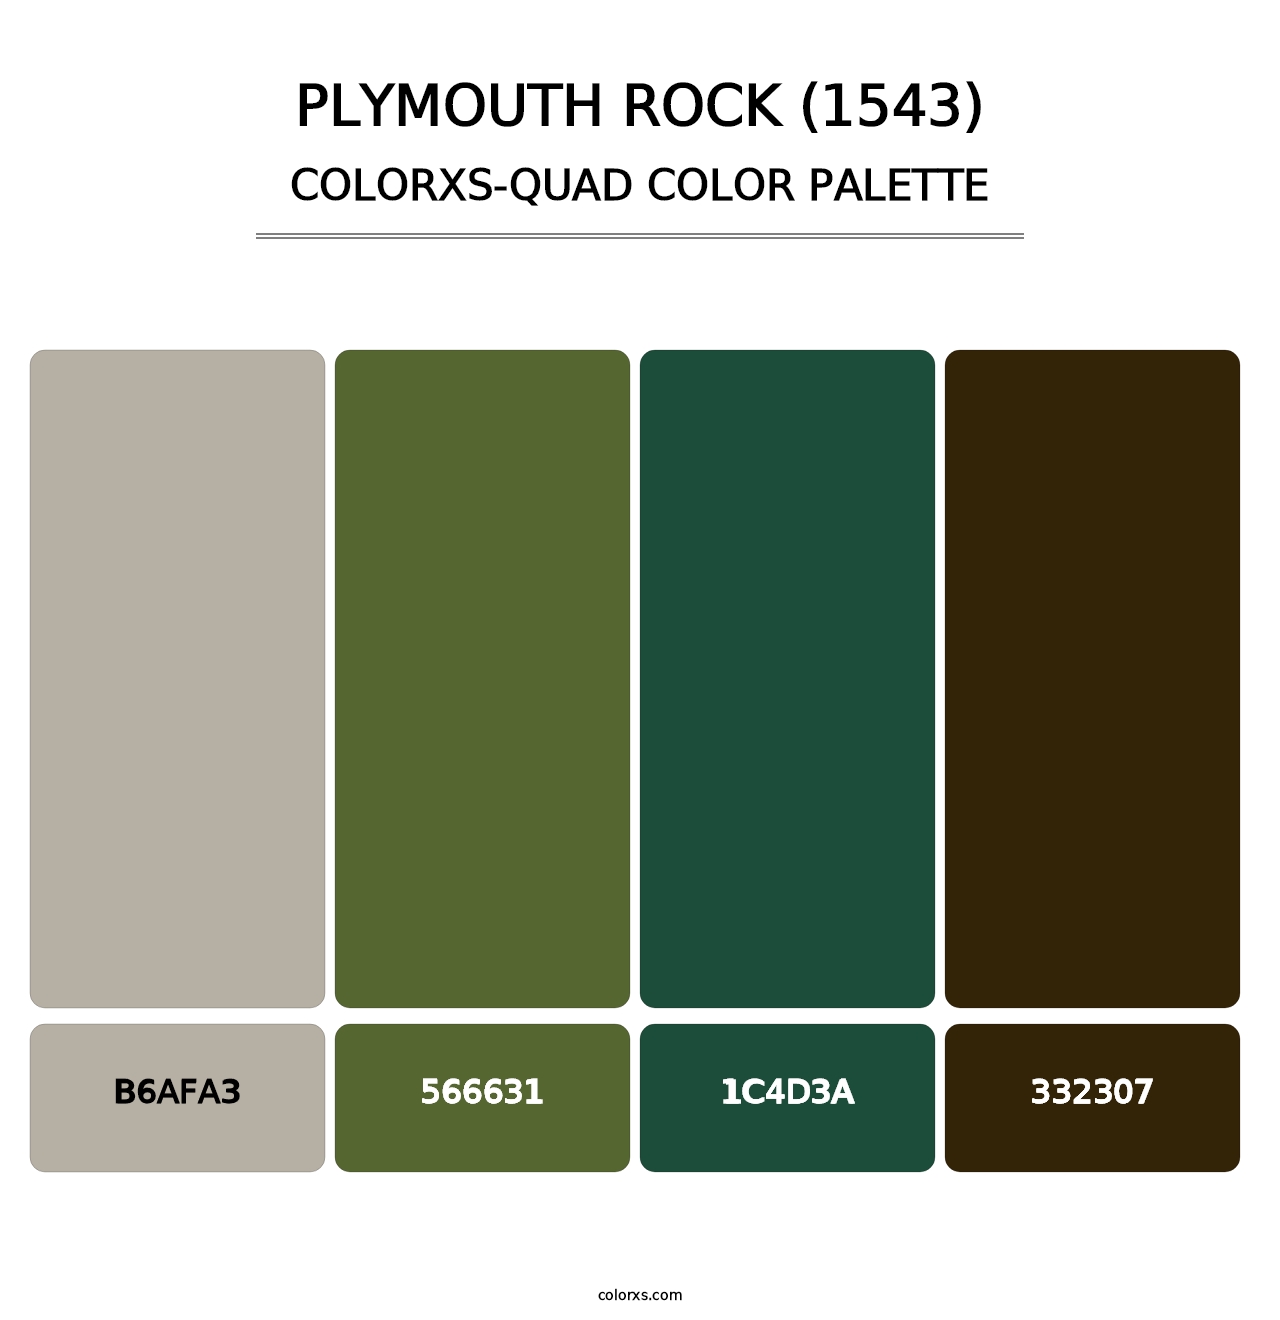 Plymouth Rock (1543) - Colorxs Quad Palette